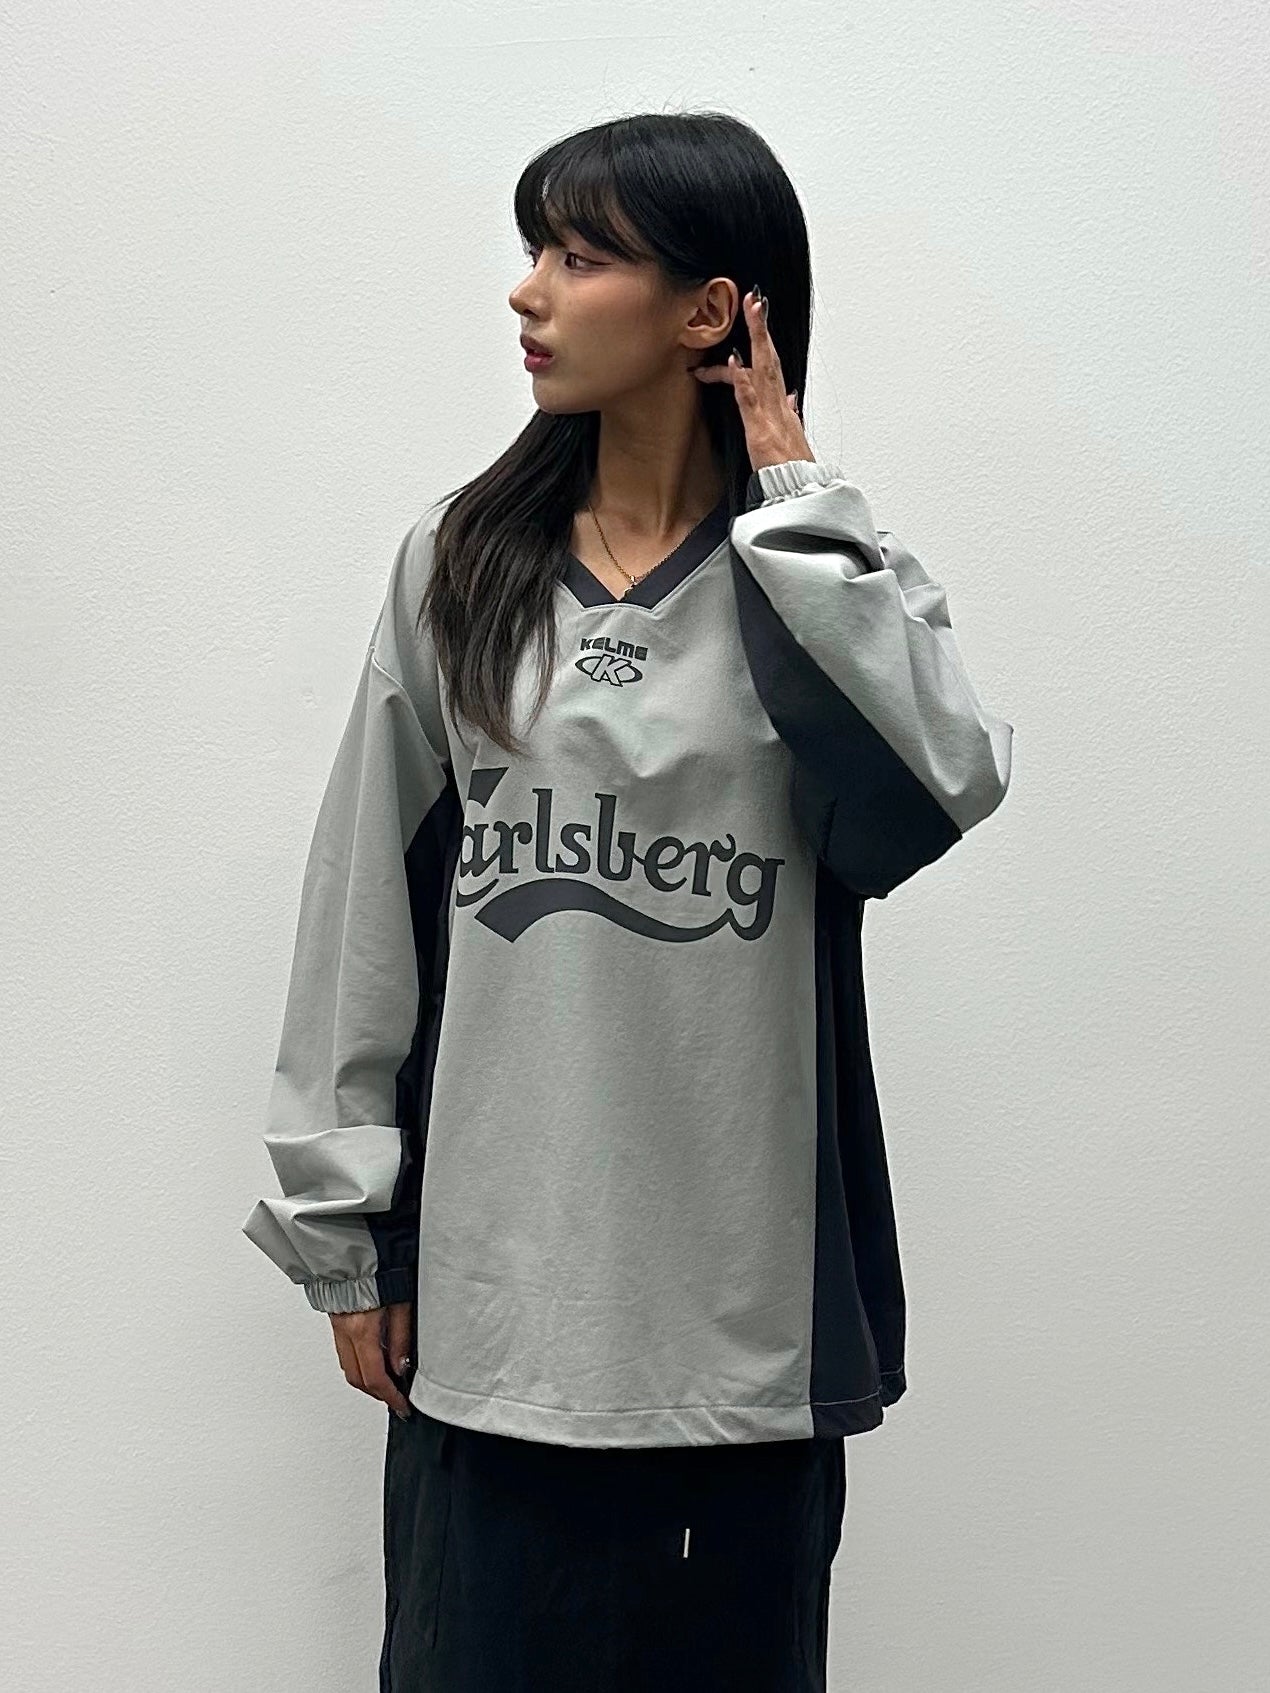 Kalisberg V-neck sweatshirt